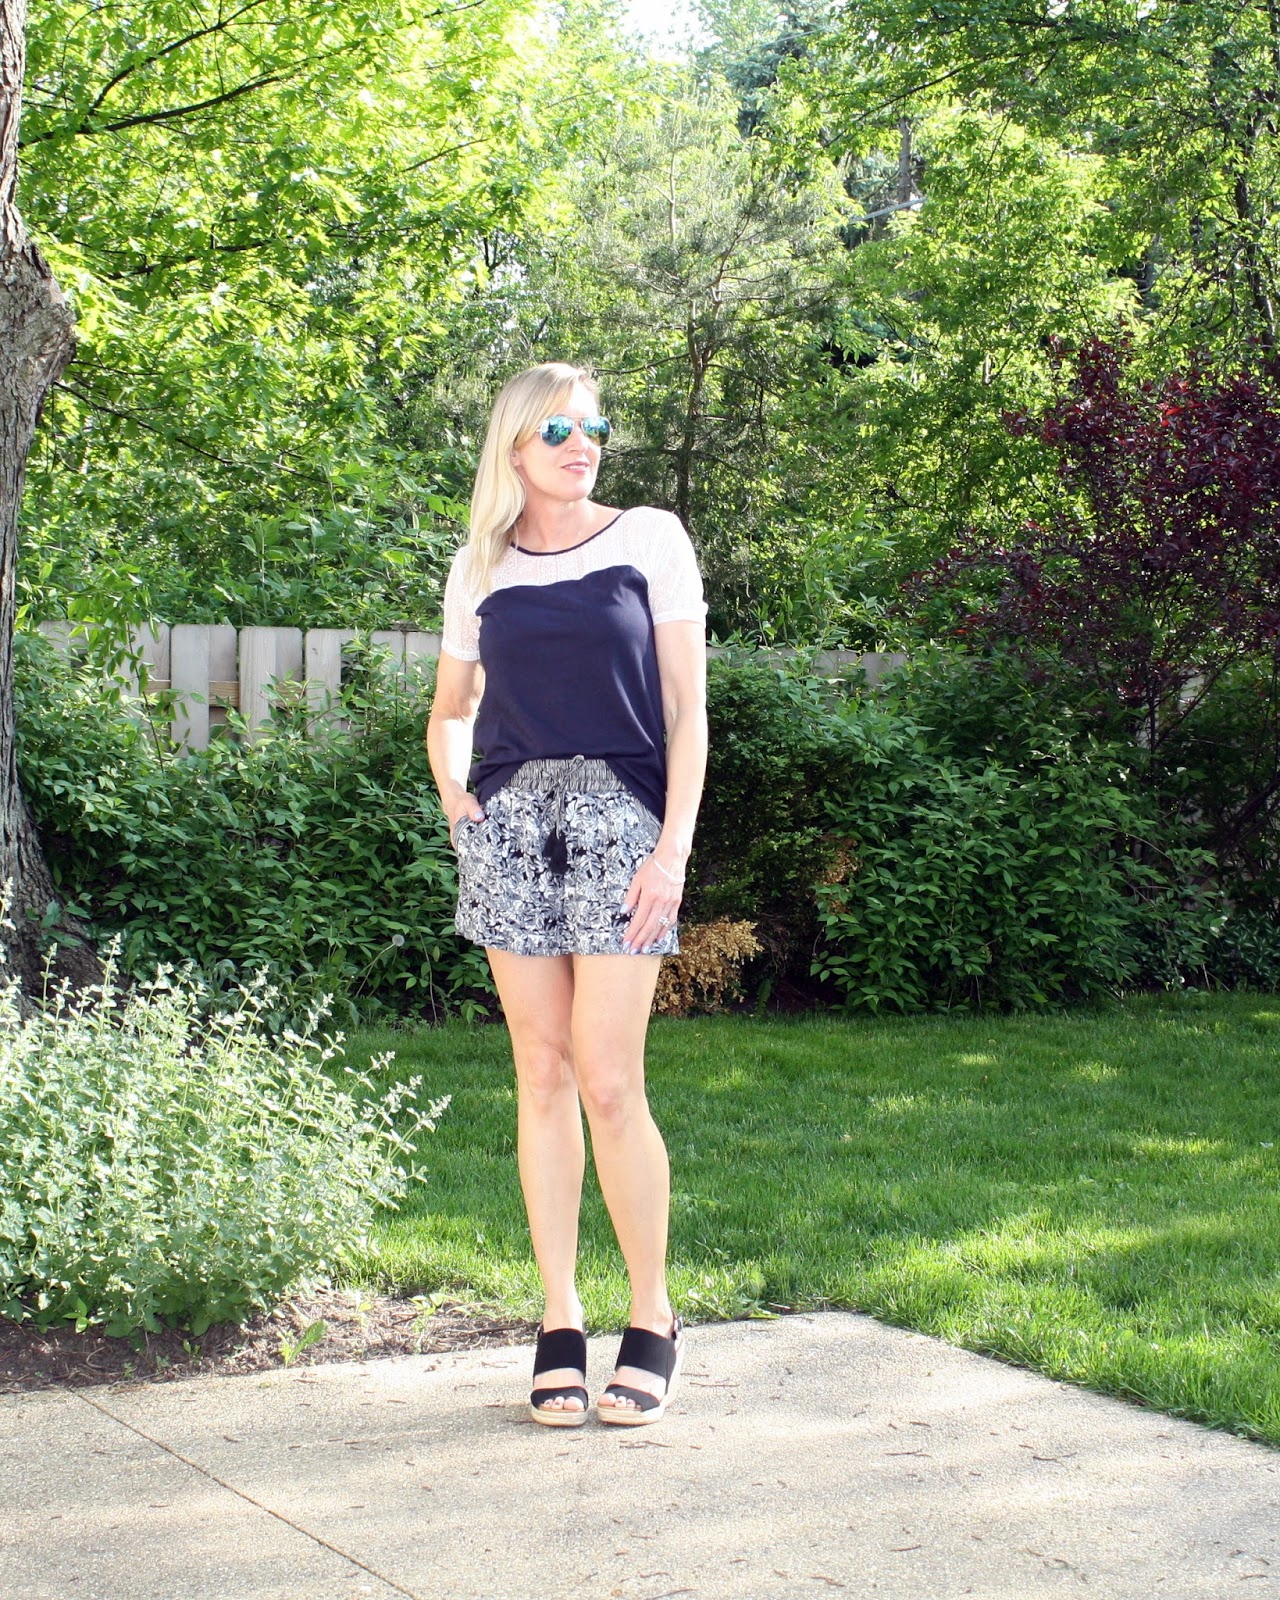 6 Ways to Wear a Blazer with Shorts - Meagan's Moda